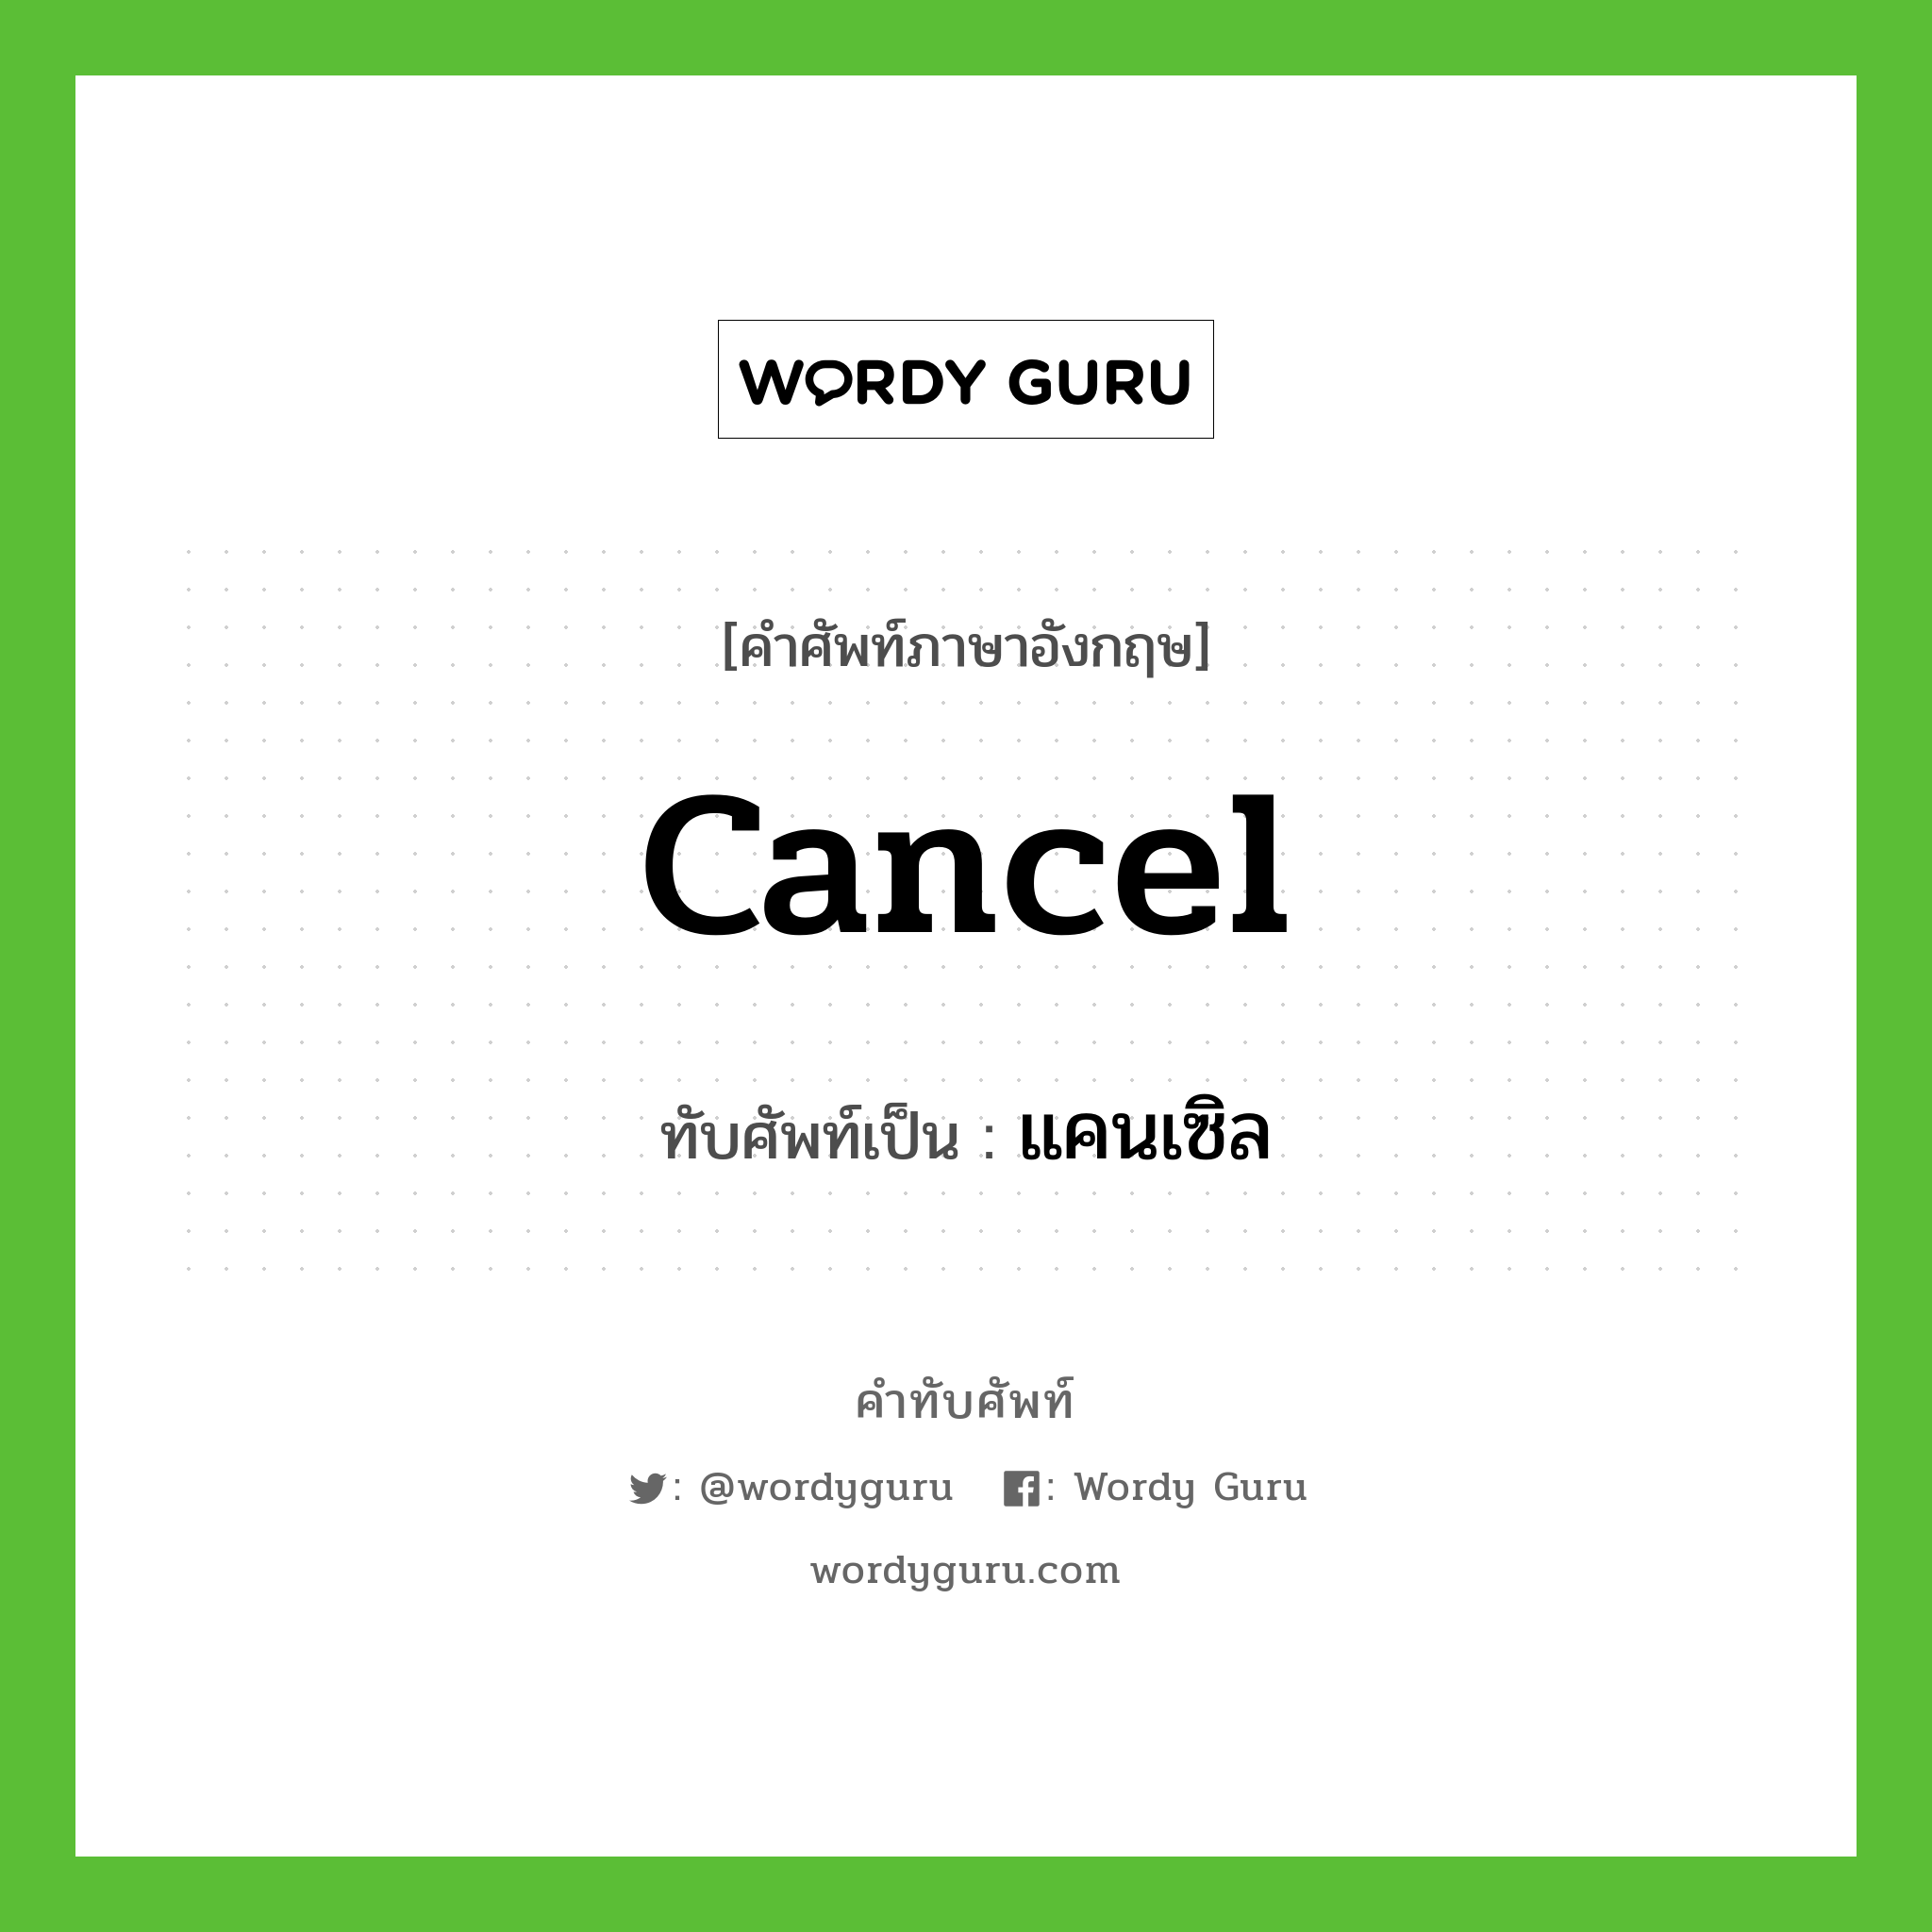 cancel เขียนเป็นคำไทยว่าอะไร?, คำศัพท์ภาษาอังกฤษ cancel ทับศัพท์เป็น แคนเซิล